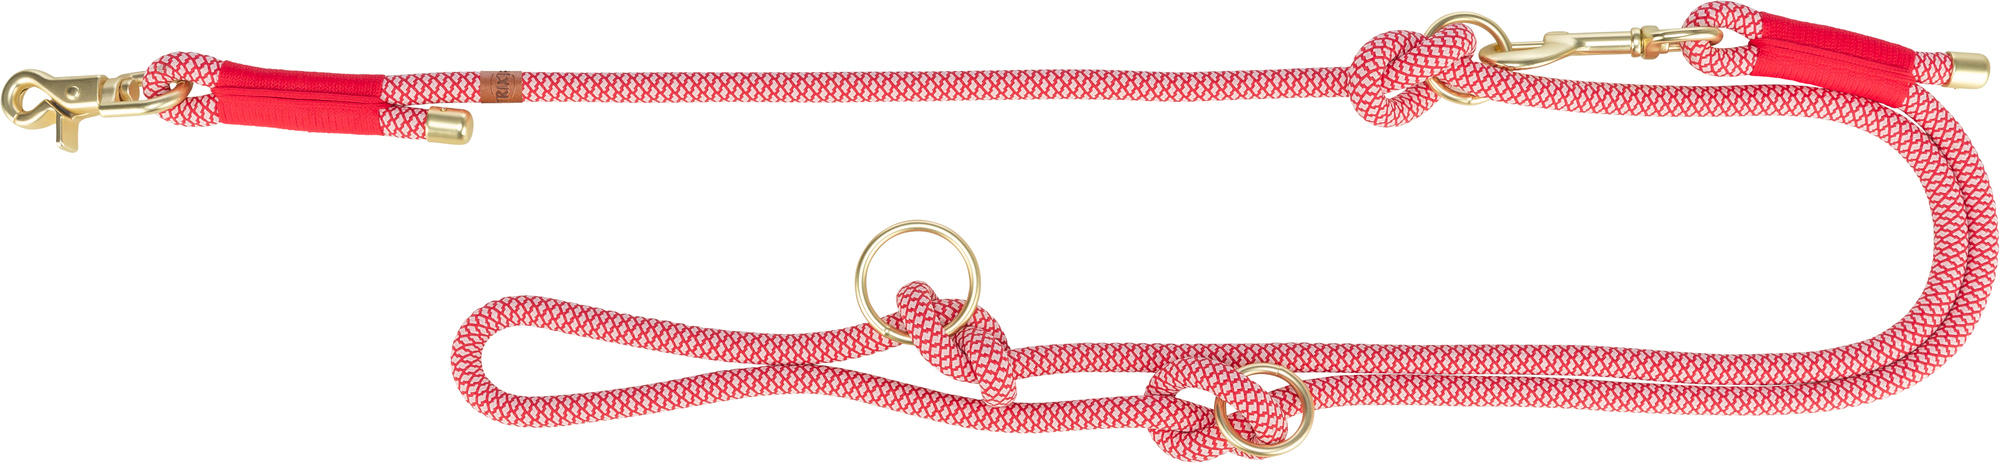 Laisse Soft Rope Trixie - 2m - meerdere kleuren beschikbaar